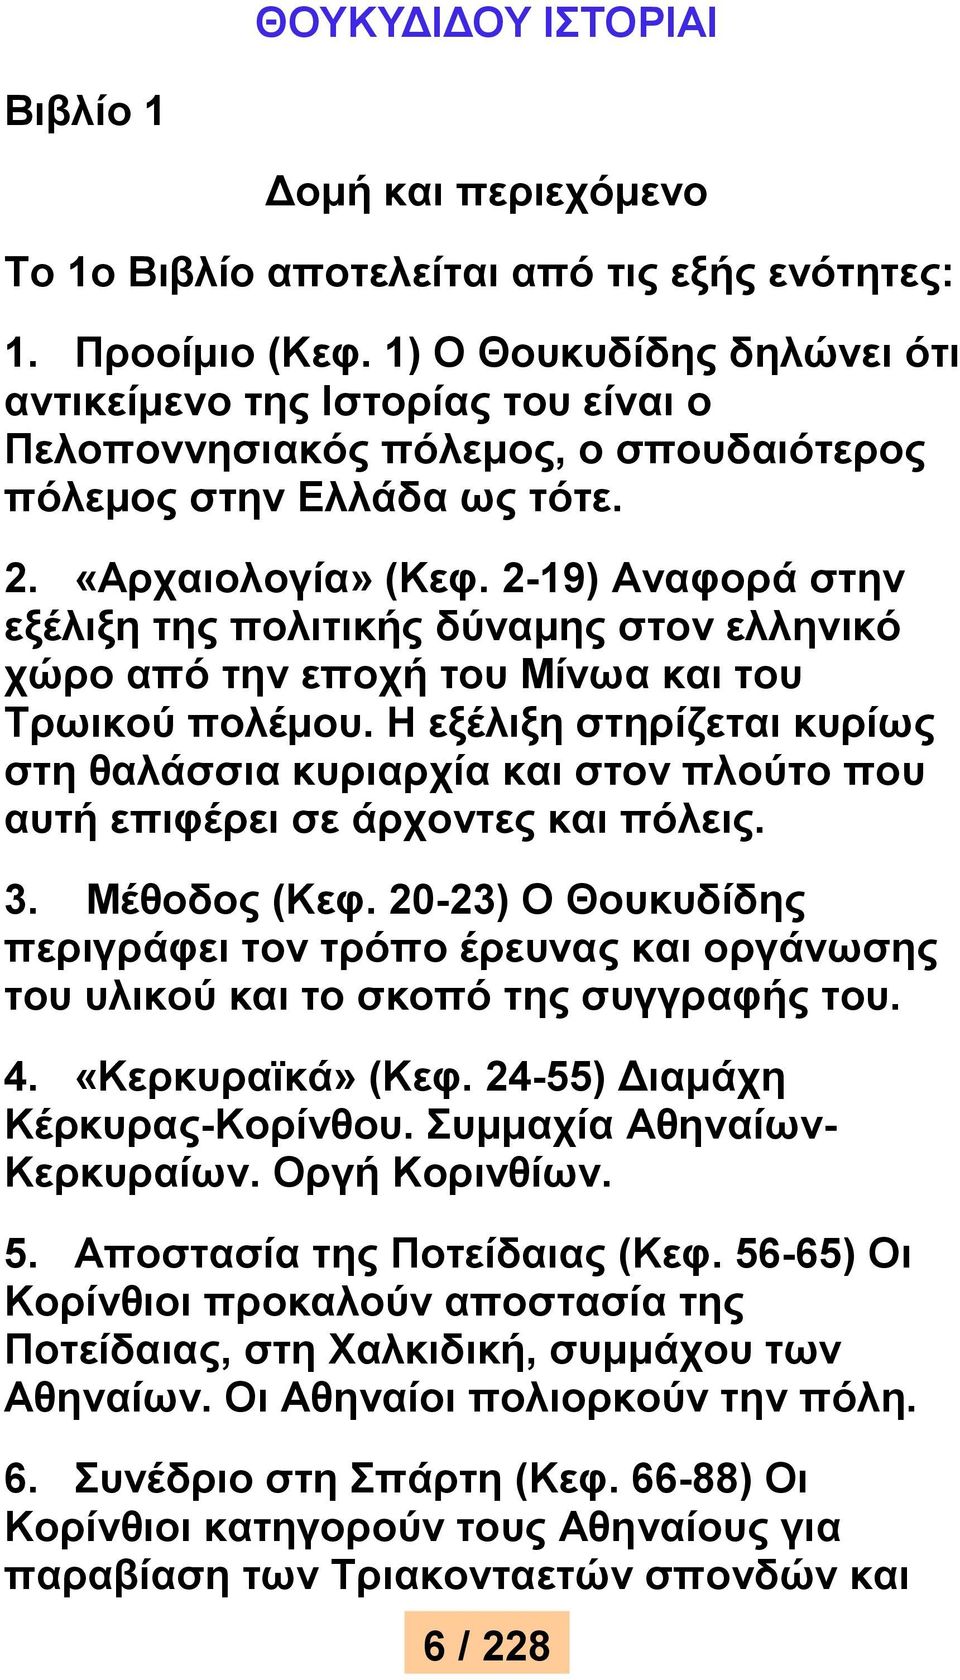 2-19) Αναφορά στην εξέλιξη της πολιτικής δύναμης στον ελληνικό χώρο από την εποχή του Μίνωα και του Τρωικού πολέμου.